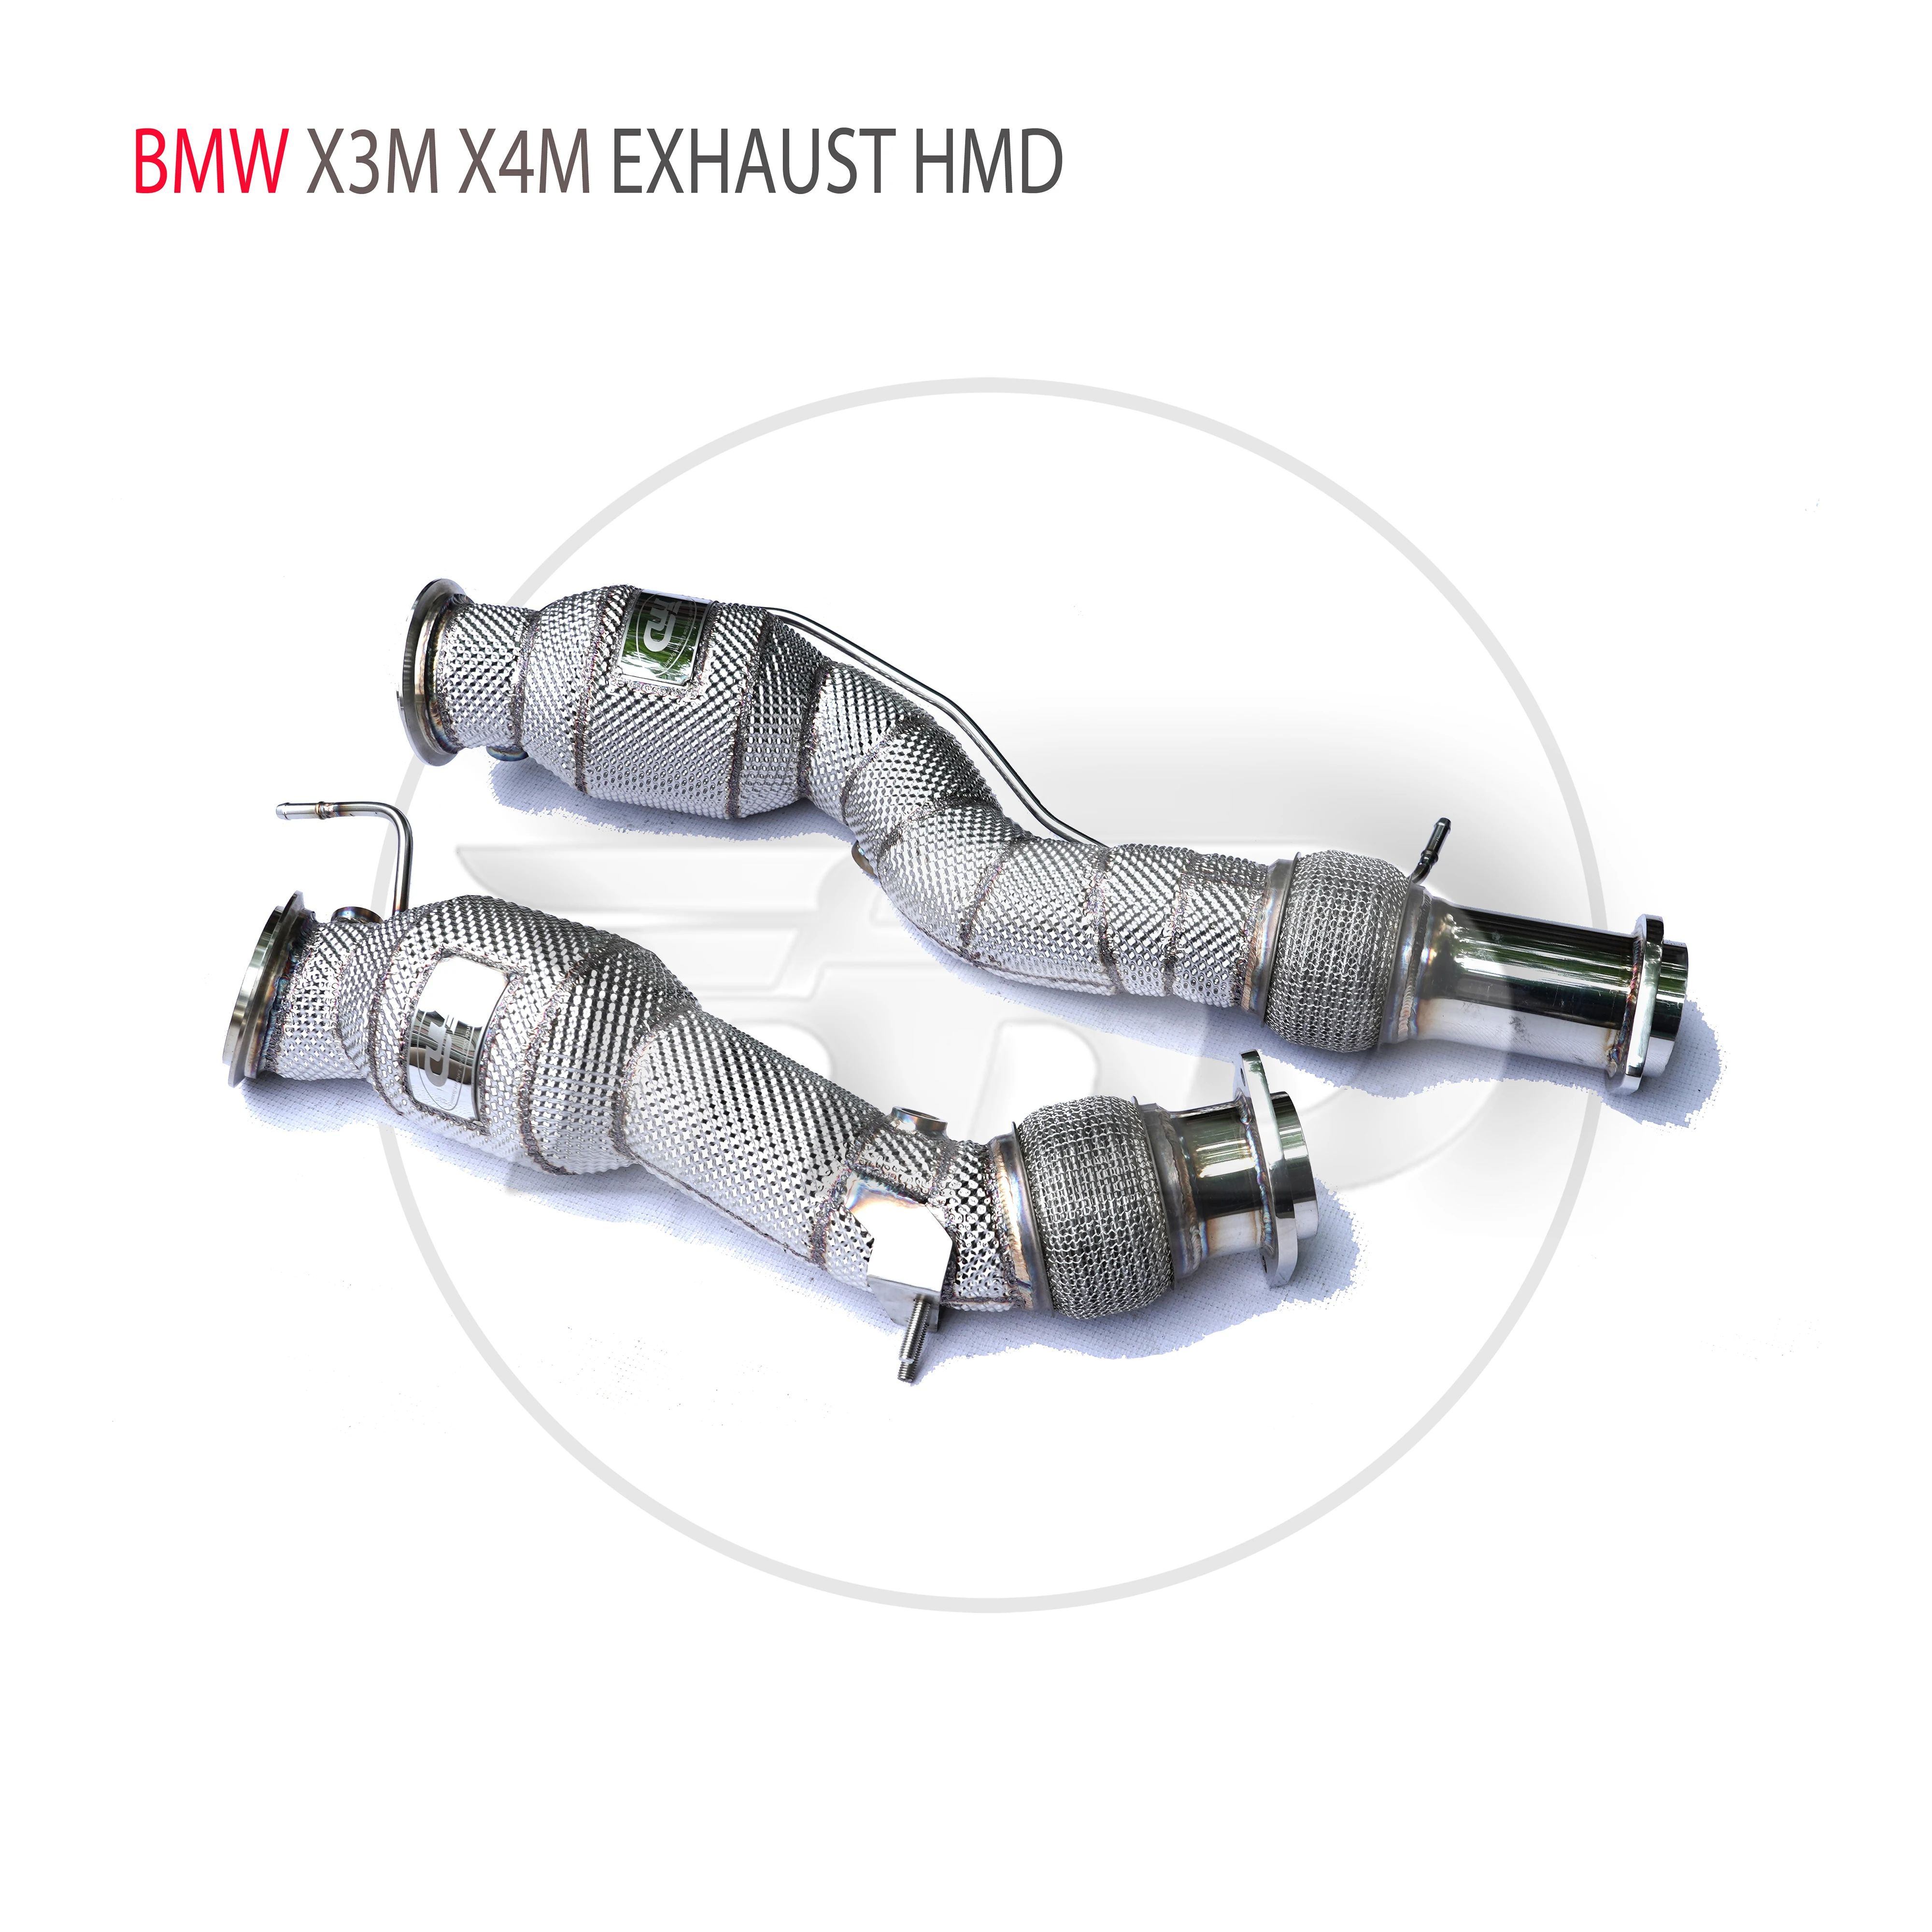 

HMD автомобильные аксессуары, выхлопная система, высокая производительность потока, водосточная труба для BMW X3M X4M с каталитическим конвертером